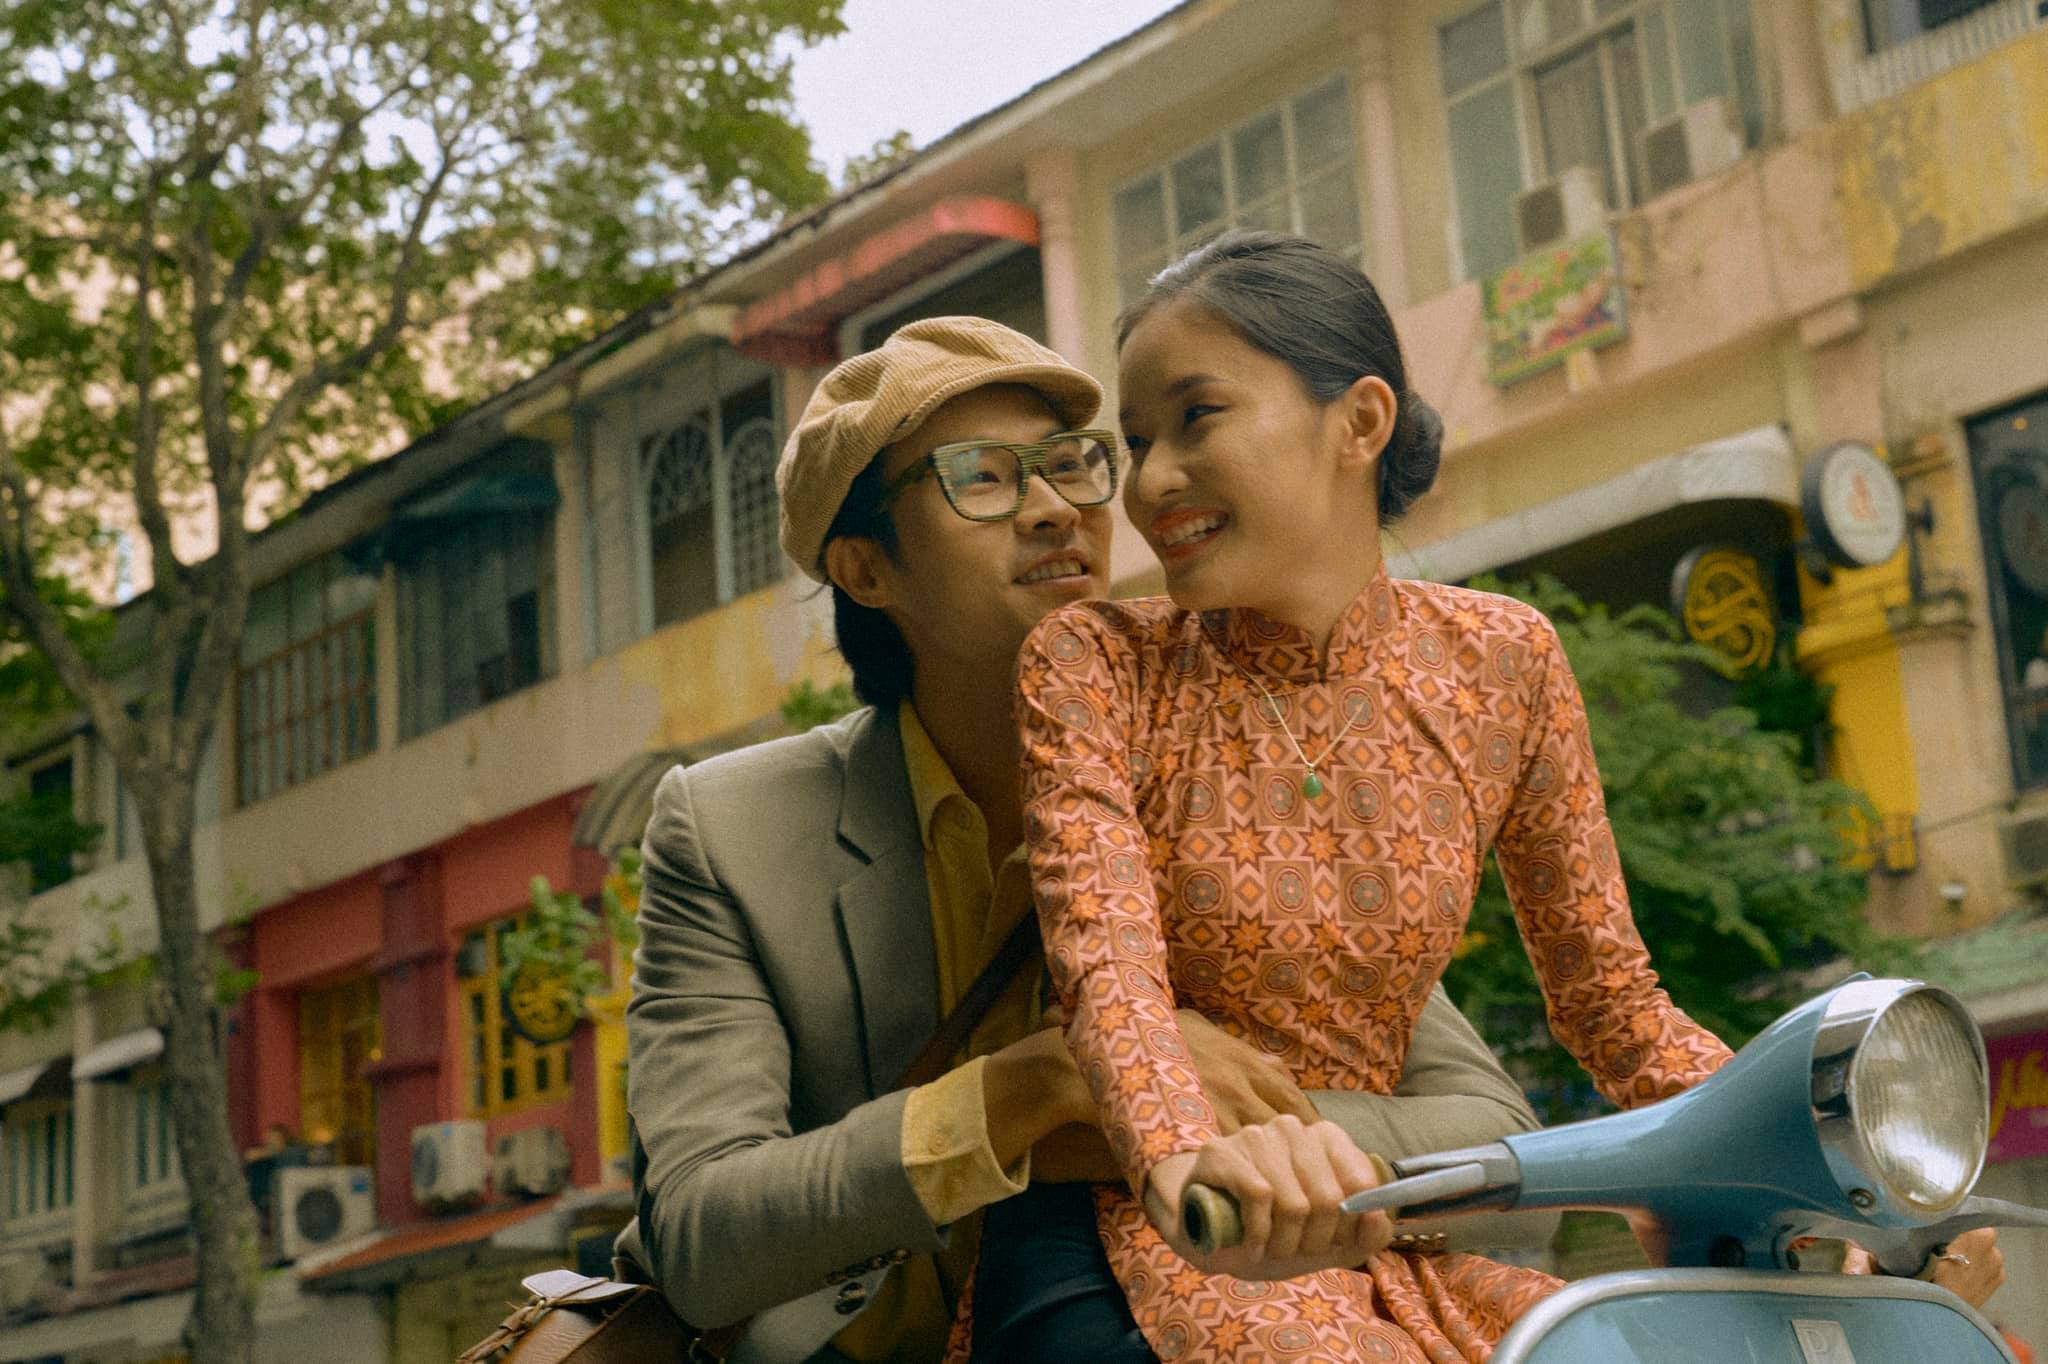 Hãy chiêm ngưỡng những bức ảnh cưới với phong cách Sài Gòn đầy tinh tế và ấn tượng để thấy rõ sự pha trộn giữa vẻ cổ điển và hiện đại của thành phố này.